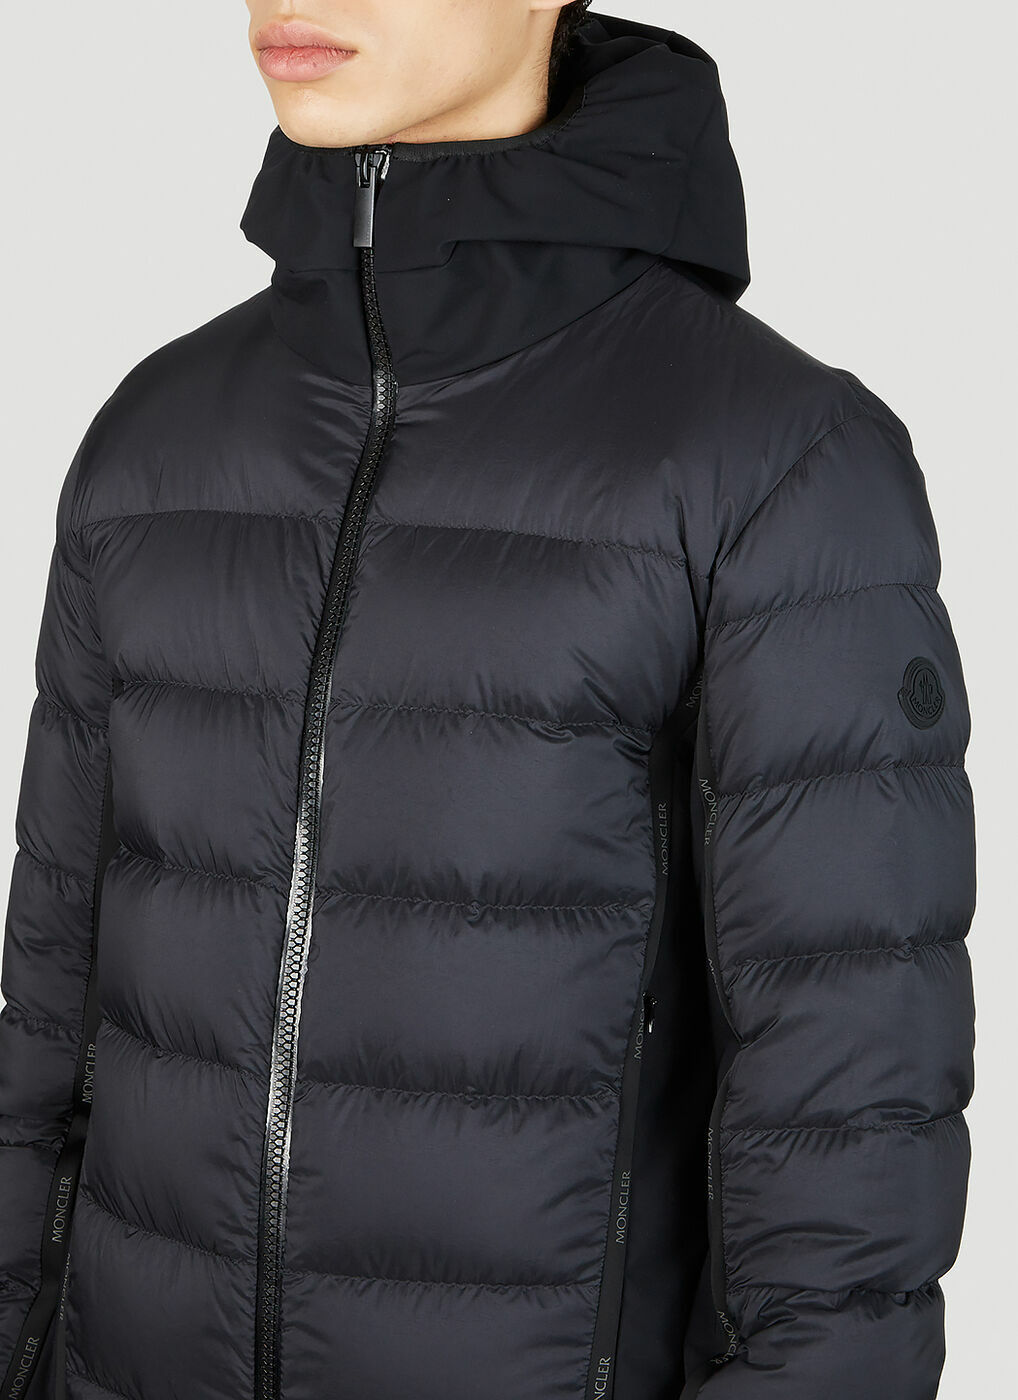 Morvan Hooded Jacket in Black Moncler